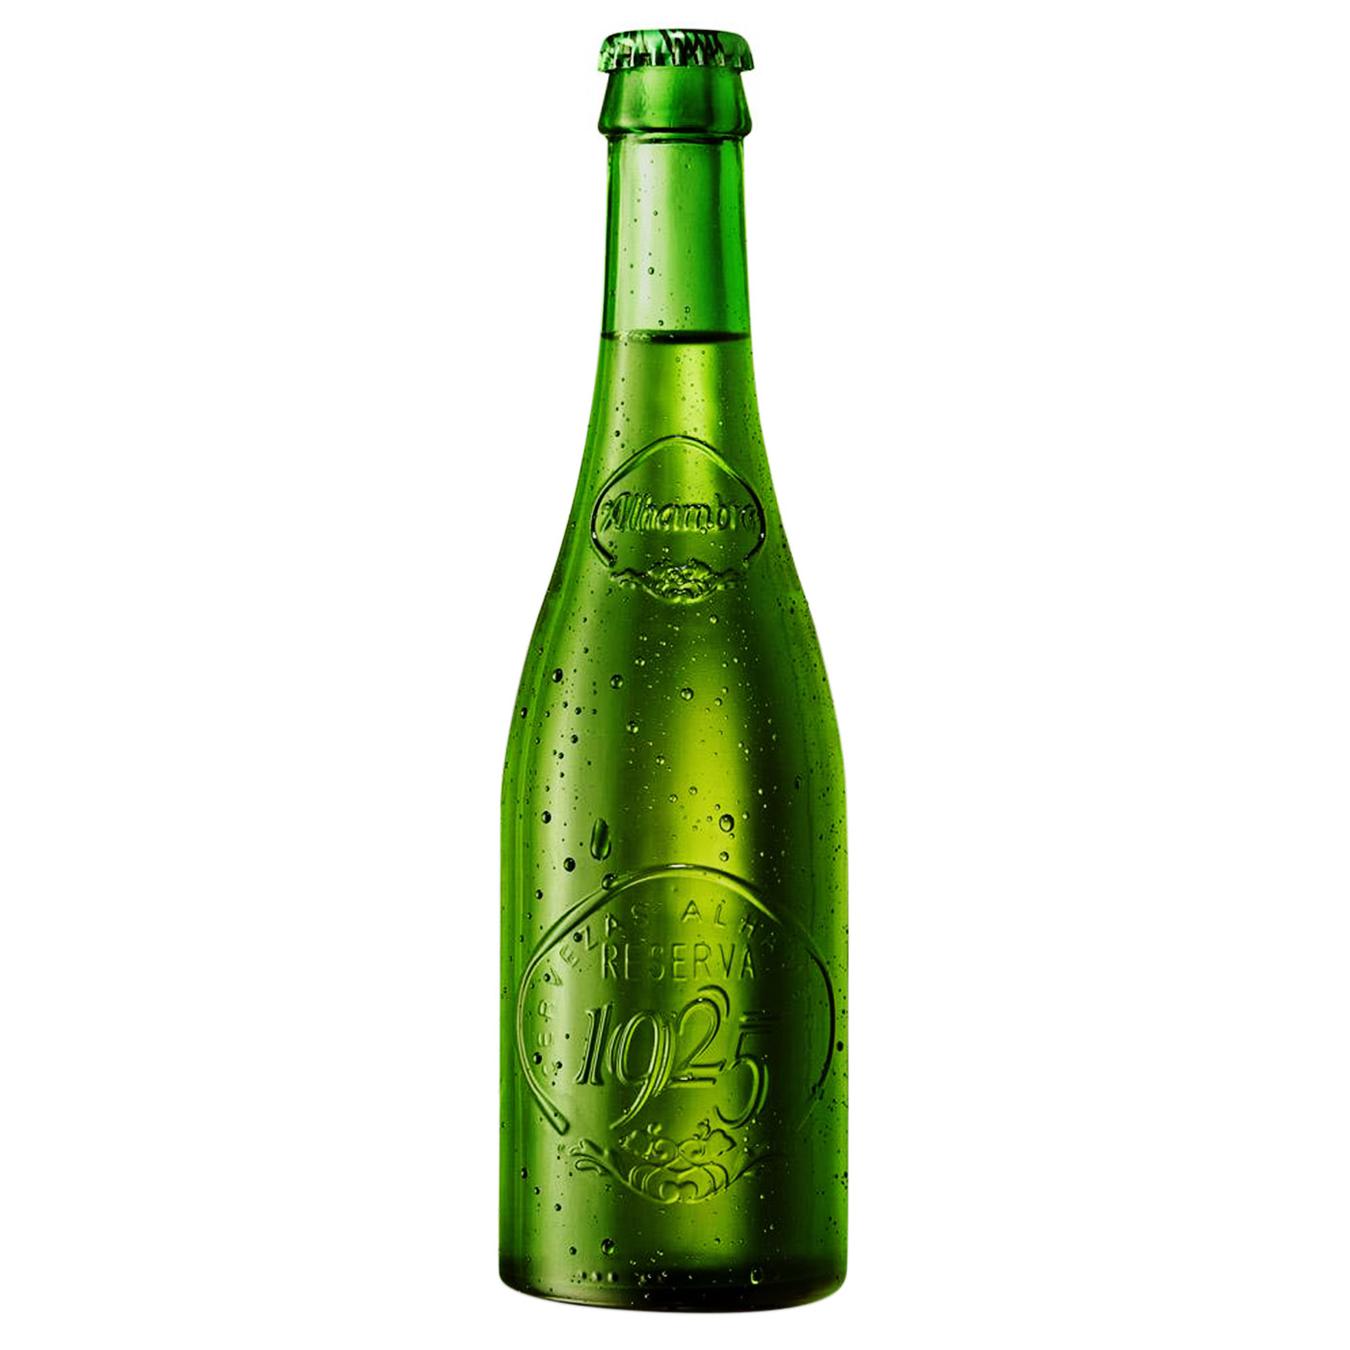 Пиво светлое Alhambra Reserva 1925 6,4% 0,33л стекло